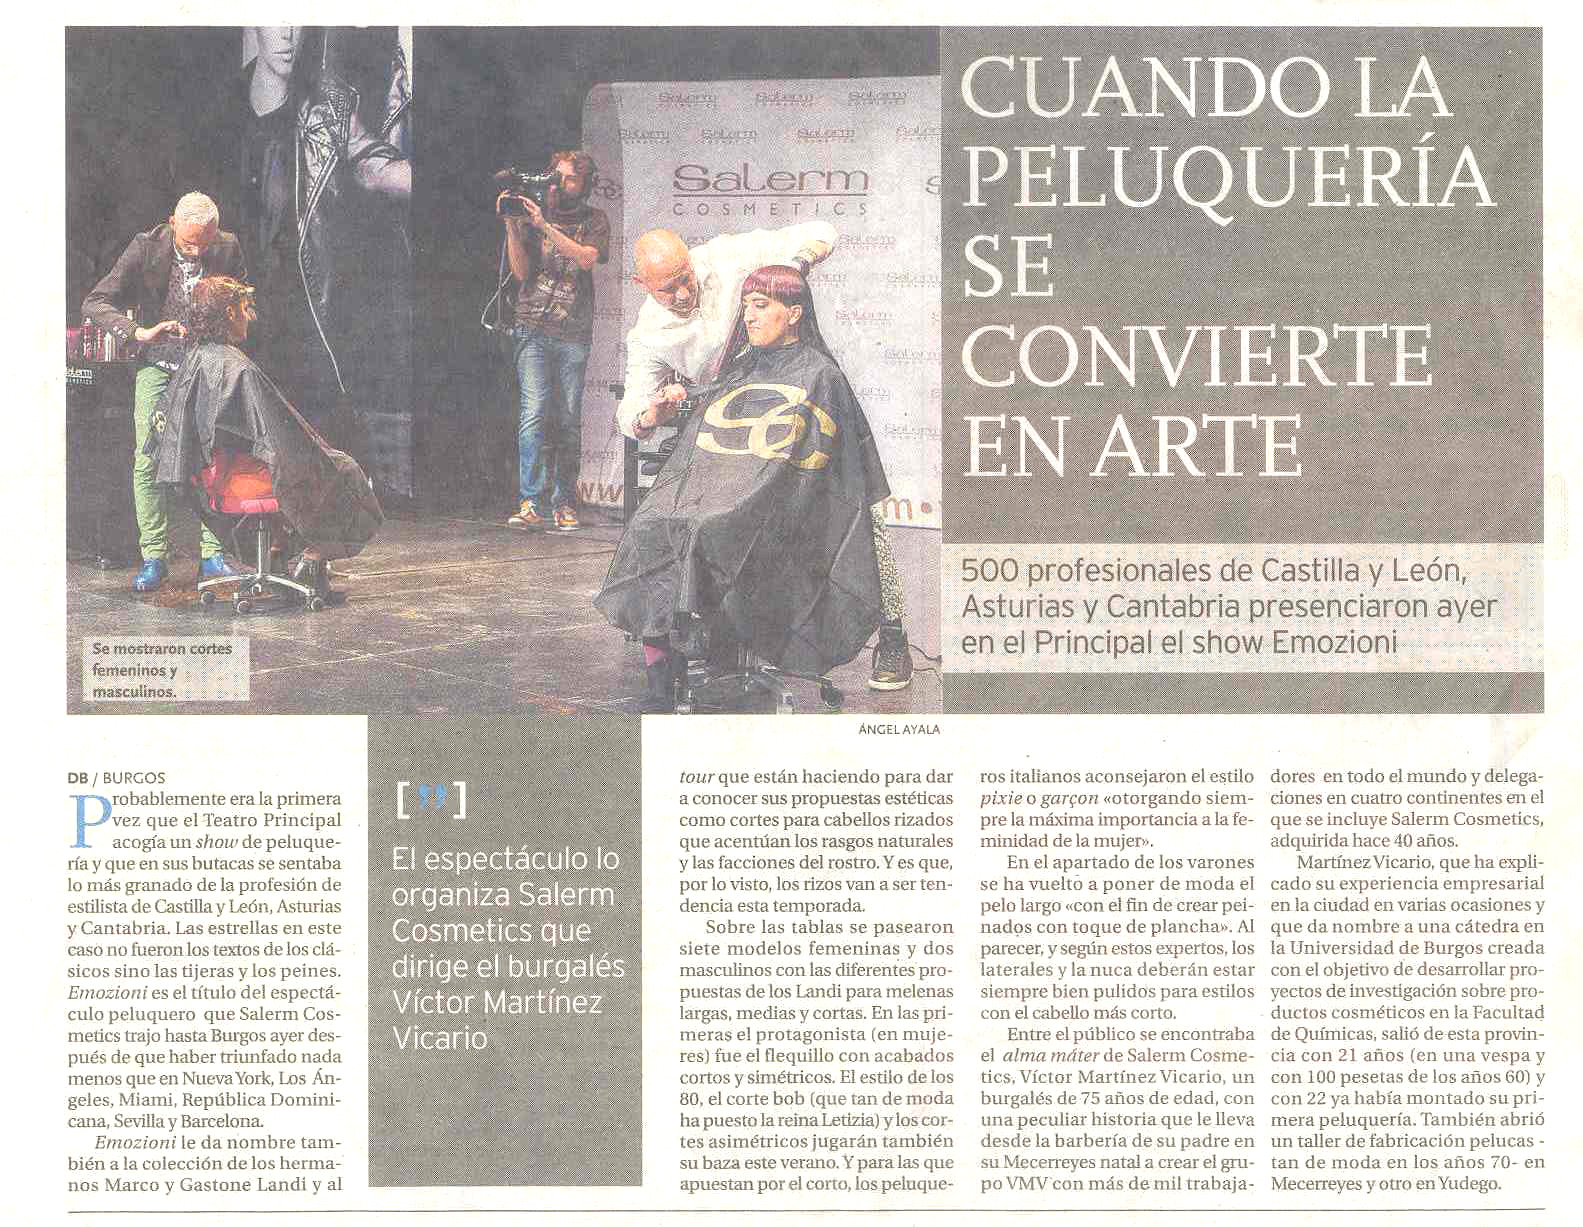 Diario de Burgos, 9-06-2015, Salerm